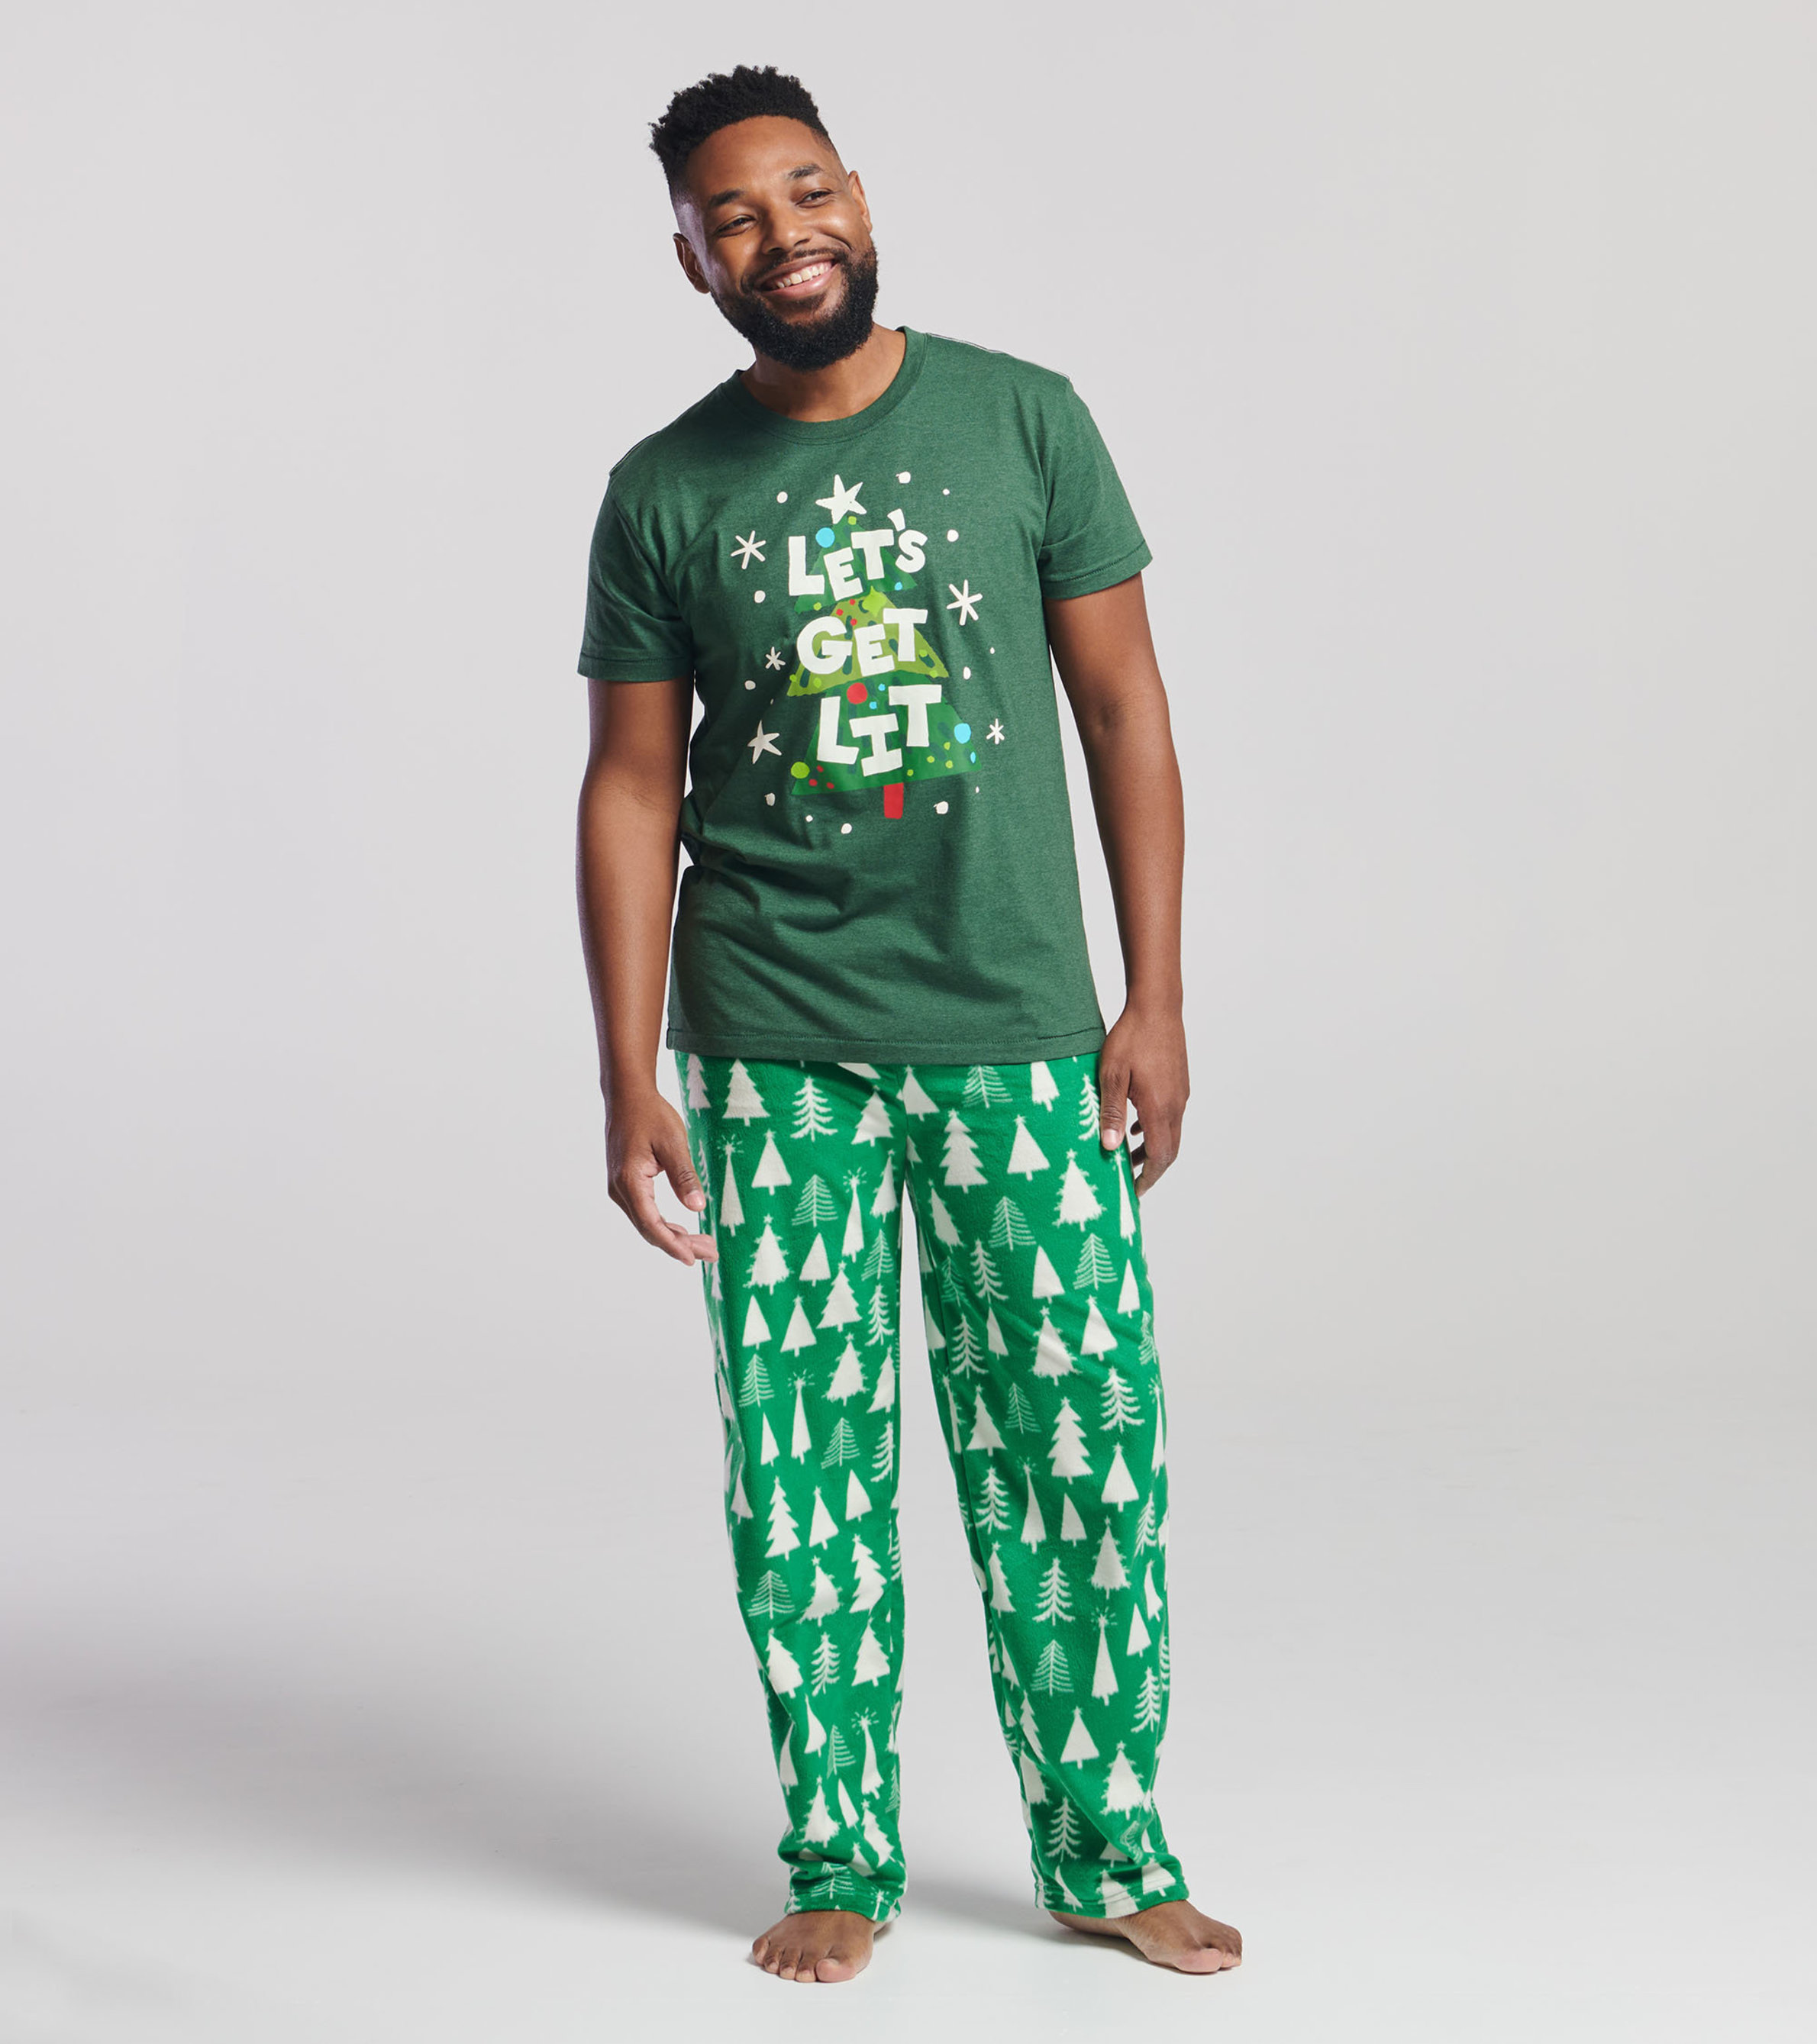 Green Christmas Tree Fleece Pyjama Pants